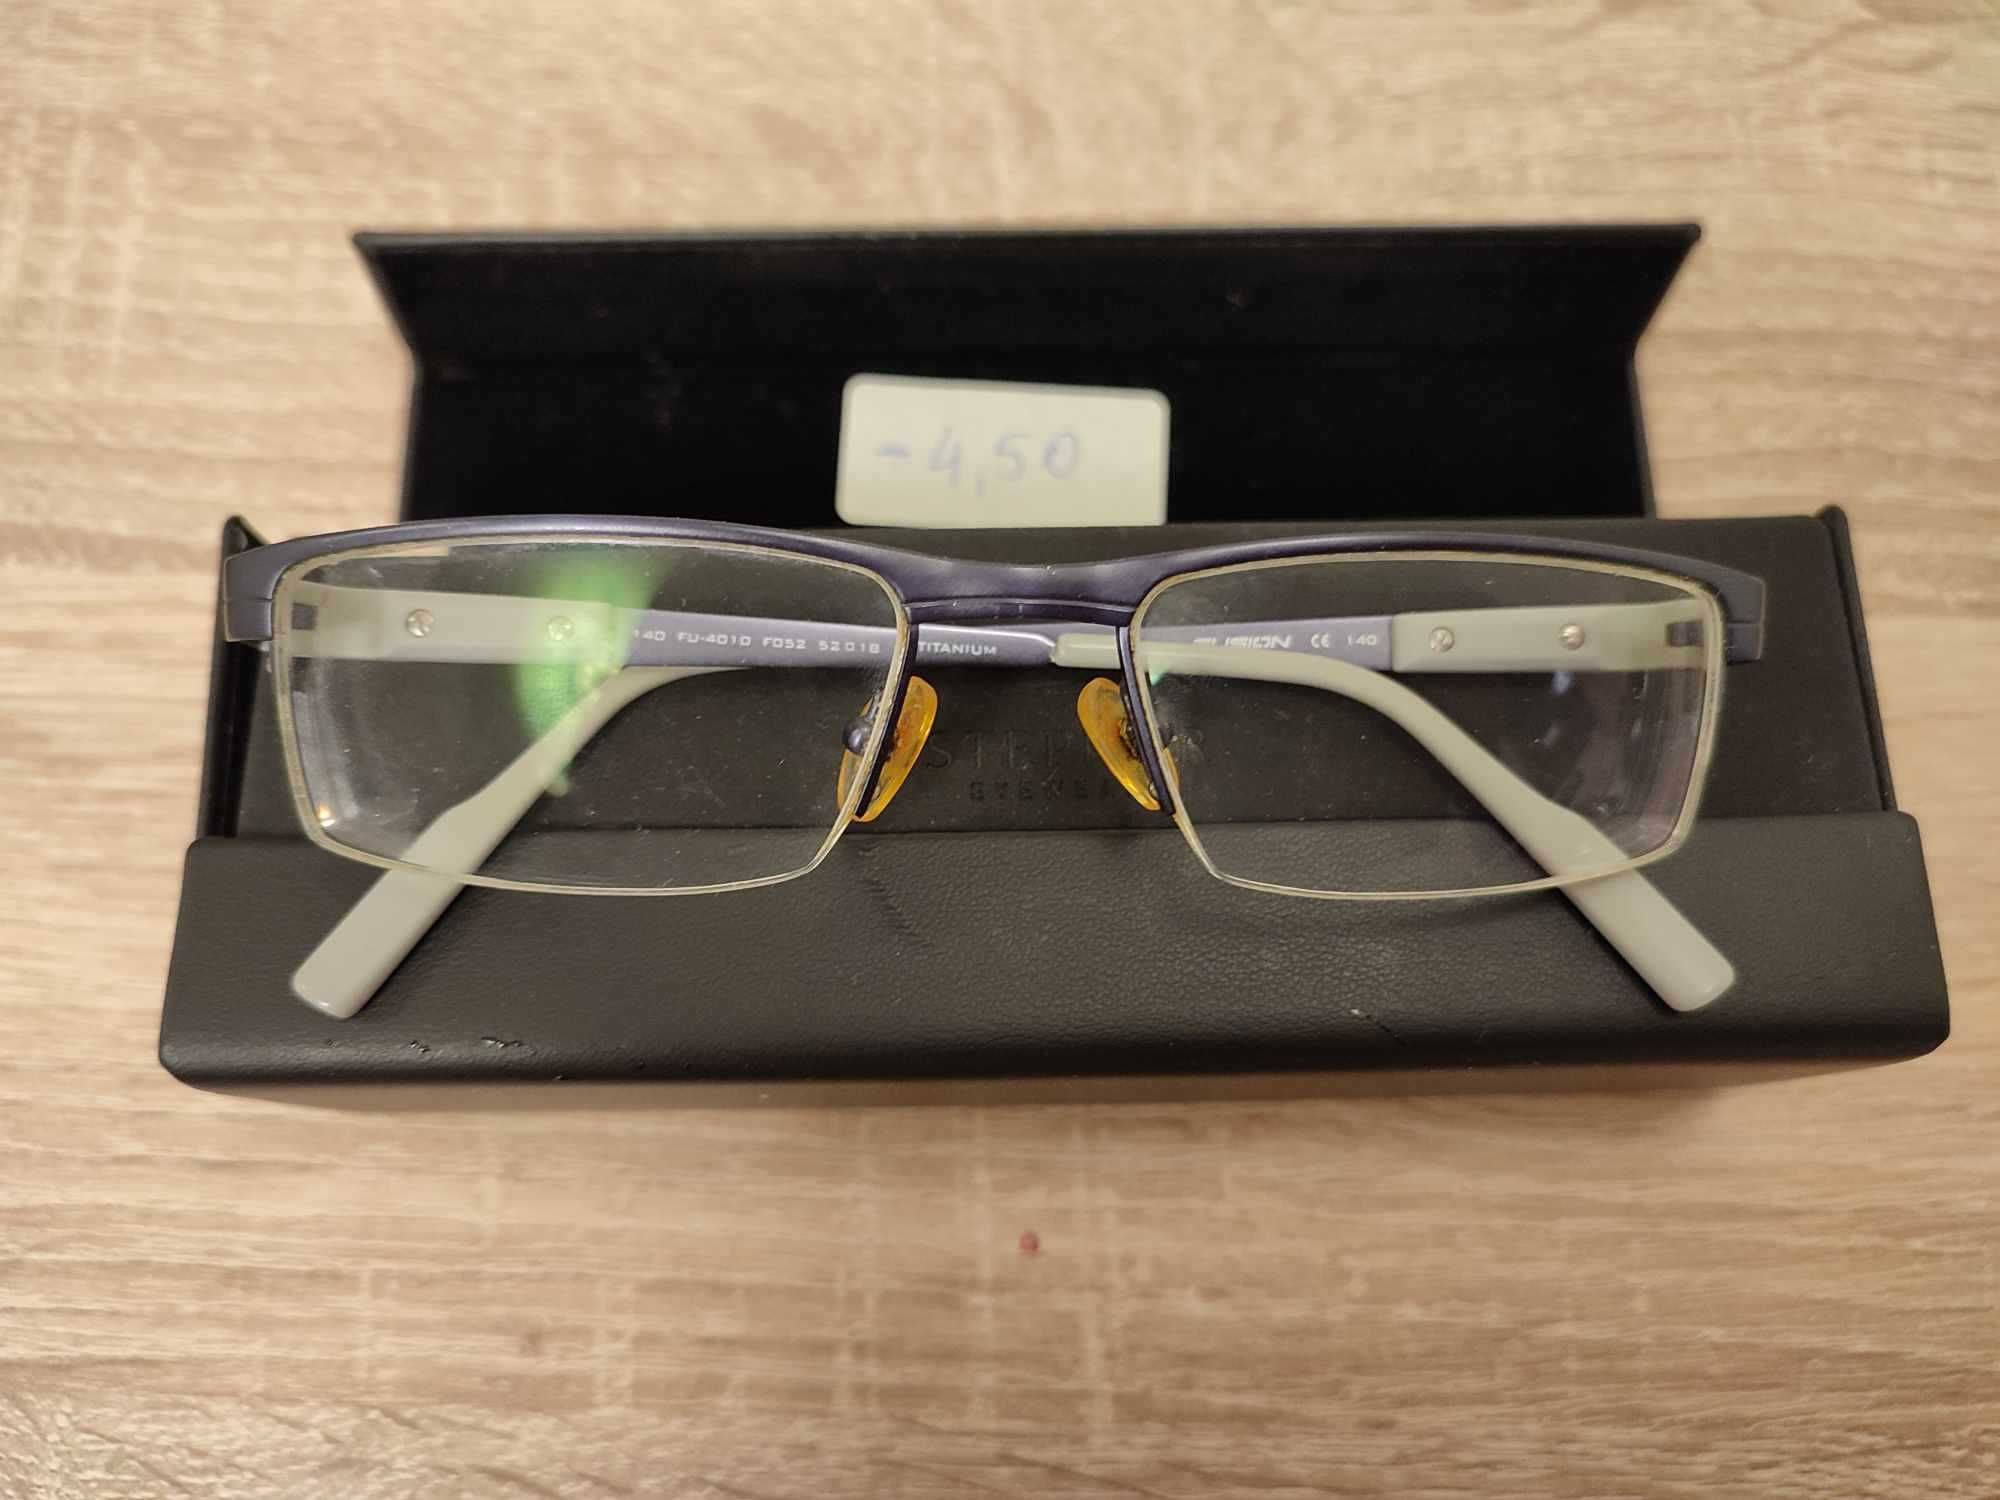 Sprzedam tytanowe okulary korekcyjne - 4,50 dioptrii TYTAN